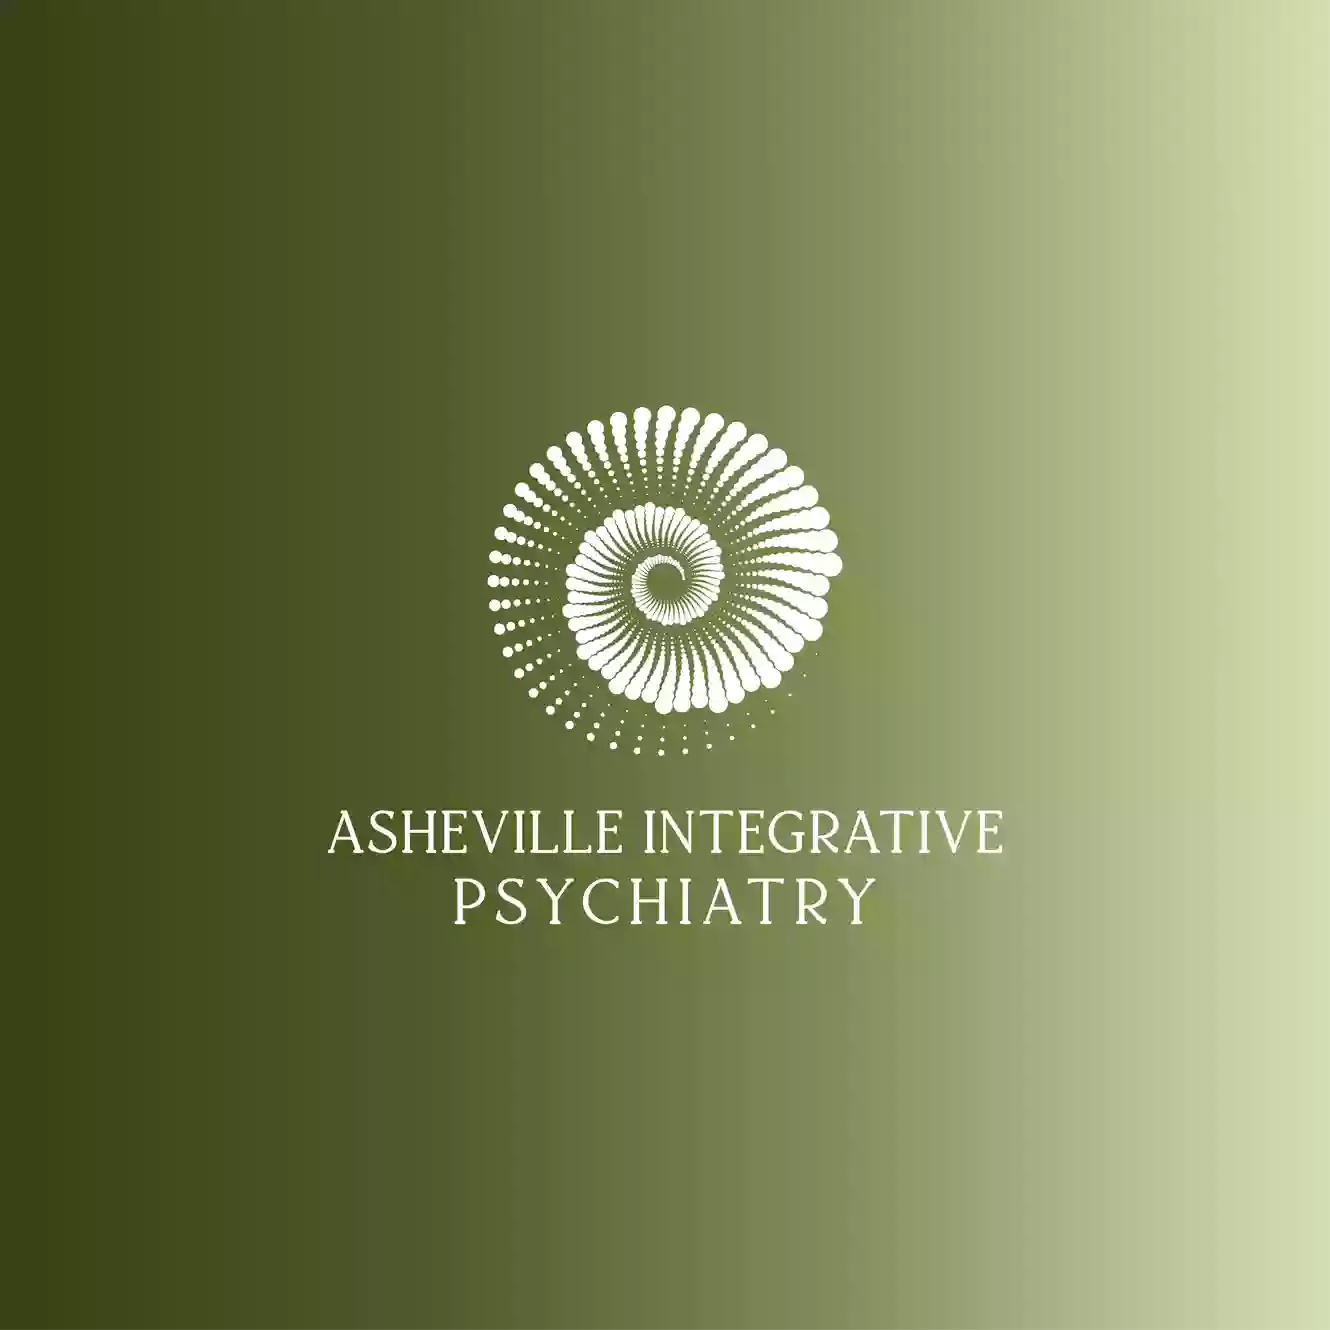 Asheville Integrative Psychiatry